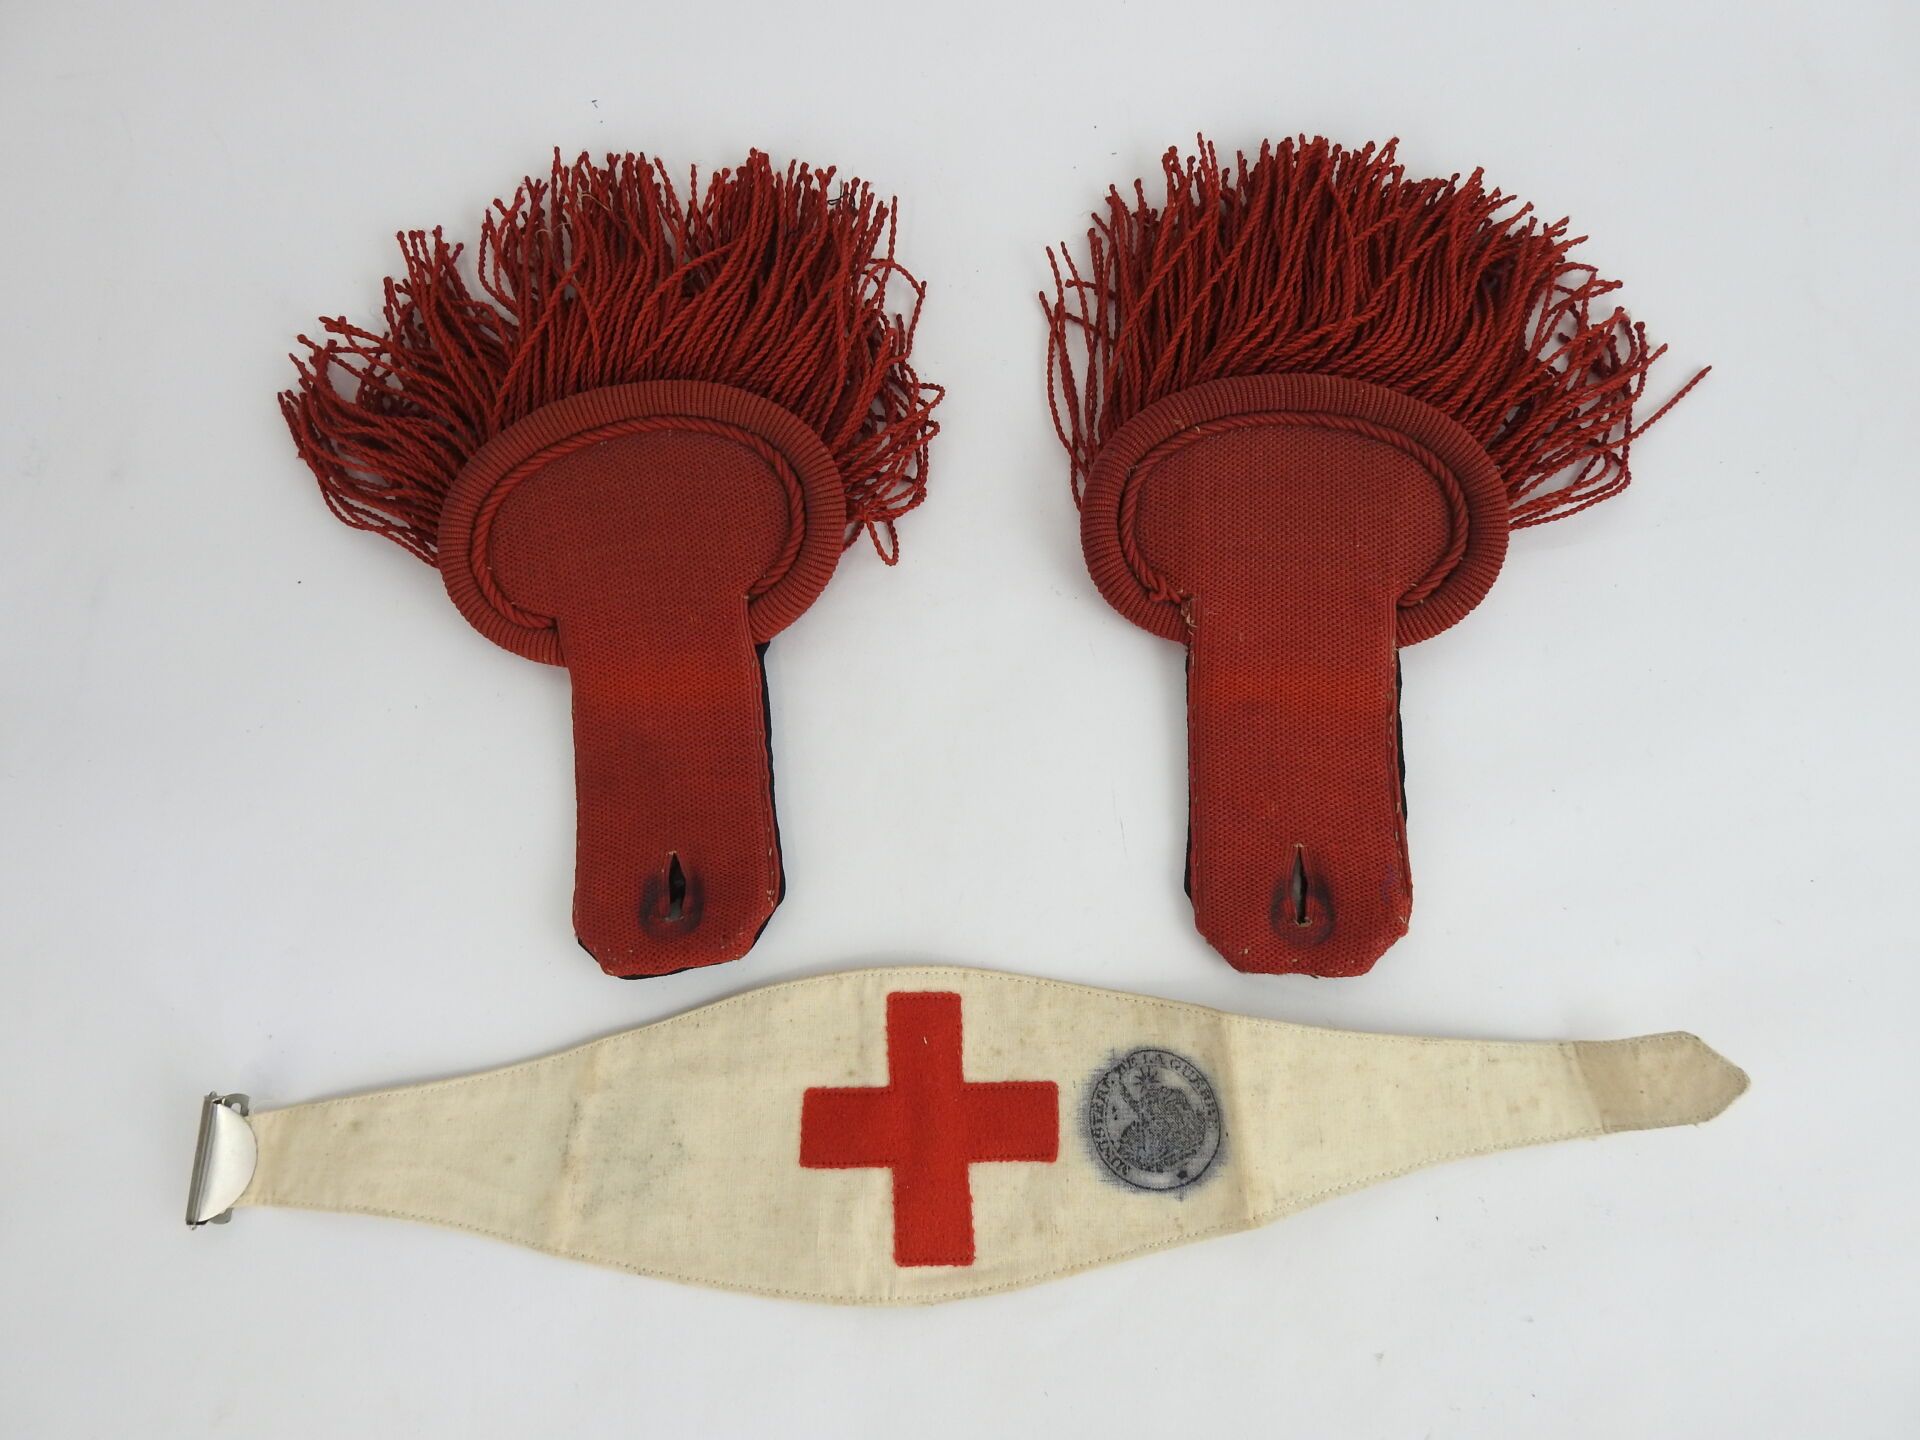 Null 法国。一对深蓝色衬里的赤褐色羊毛的步兵肩章，上面有一个由陆军部盖章的规定的红色十字臂章。共和国第三时期。BE